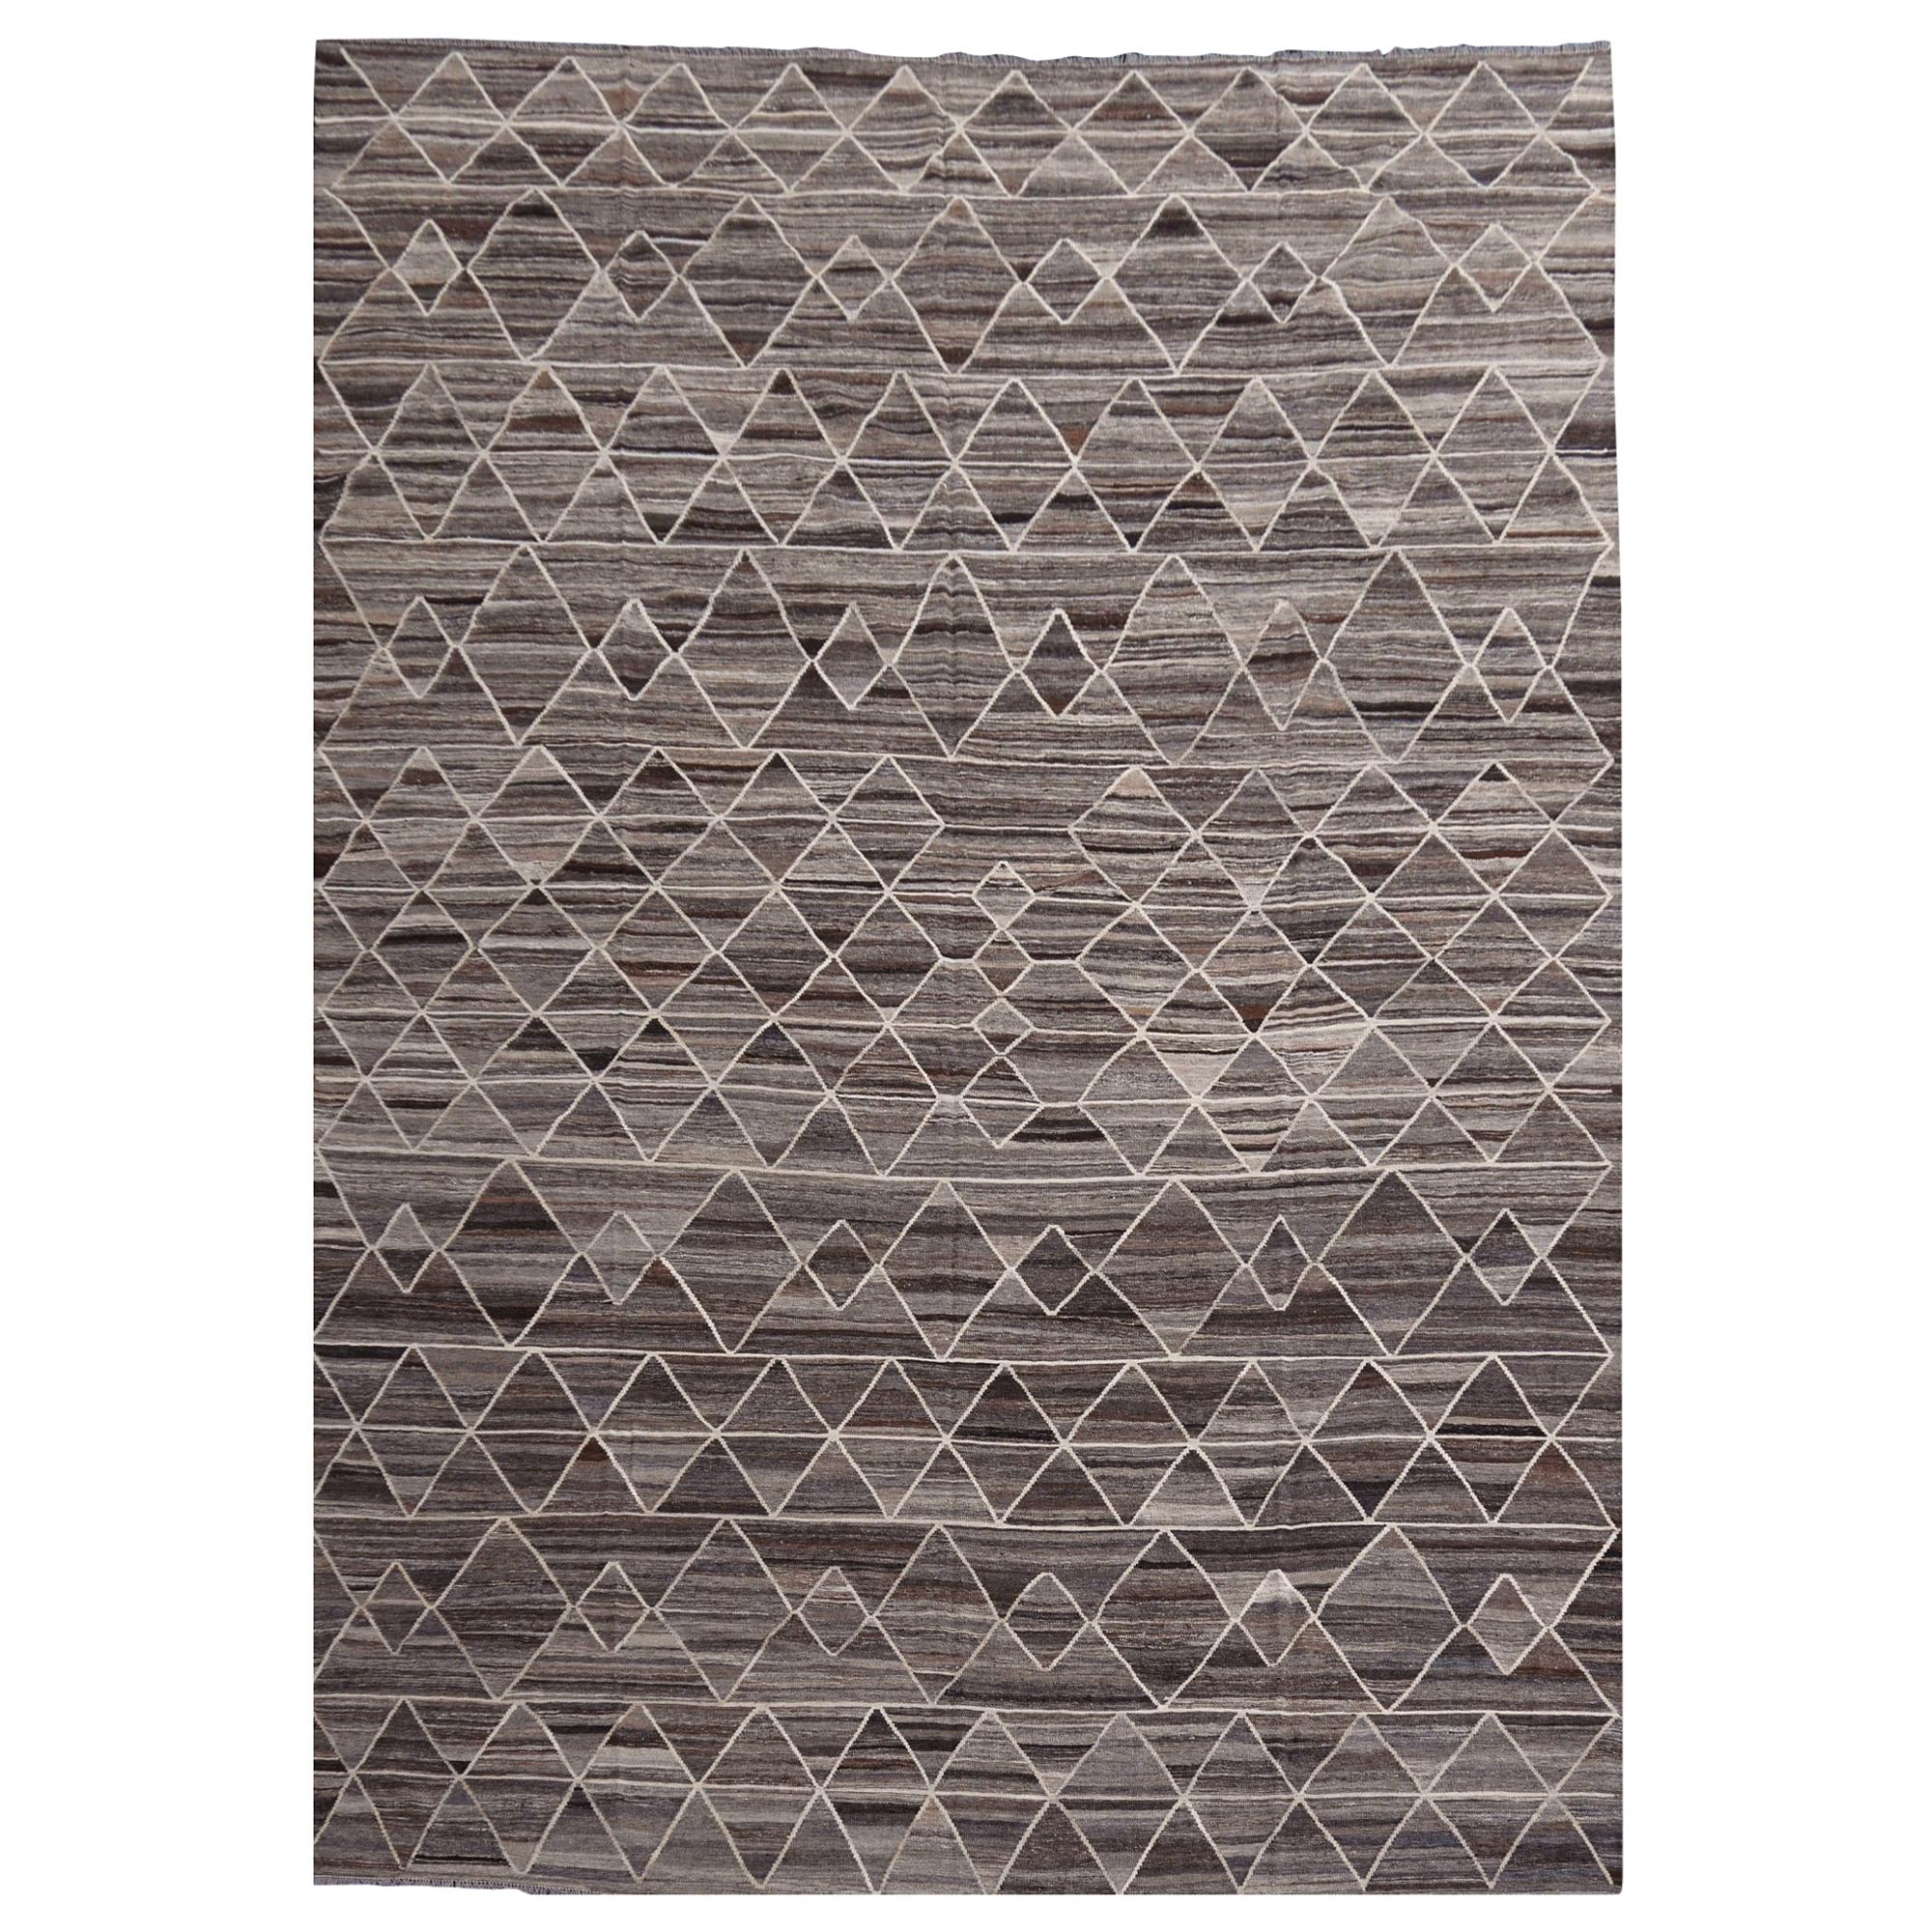 17 x 12 Fuß Teppich Kelim Modern Design Neutral Grau Braun Skandinavischer Stil Teppich im Angebot